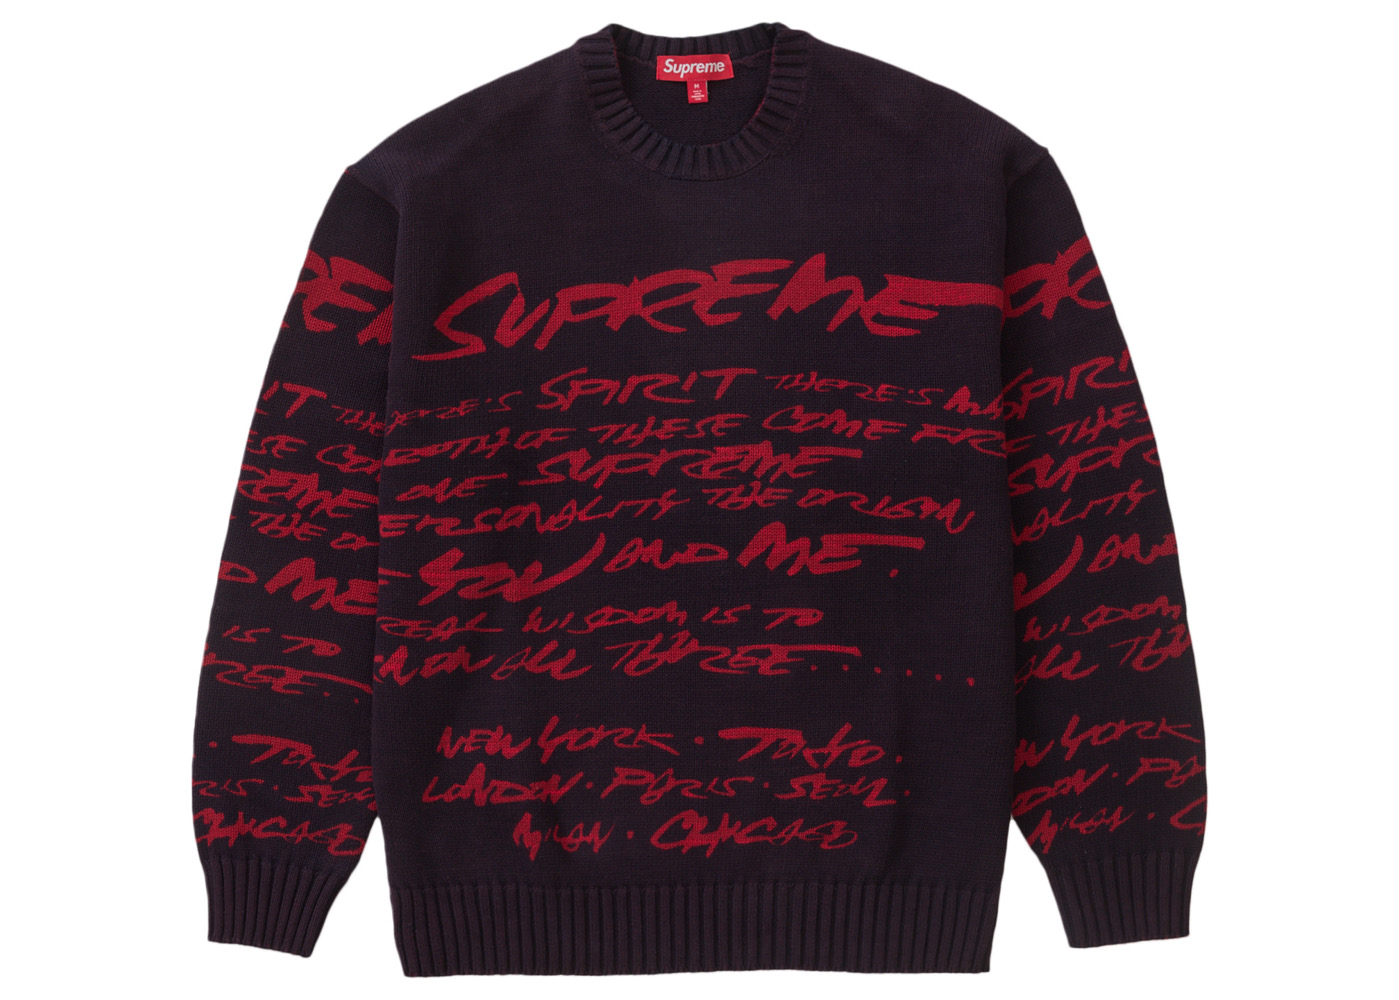 19,444円Supreme Futura Sweater Black